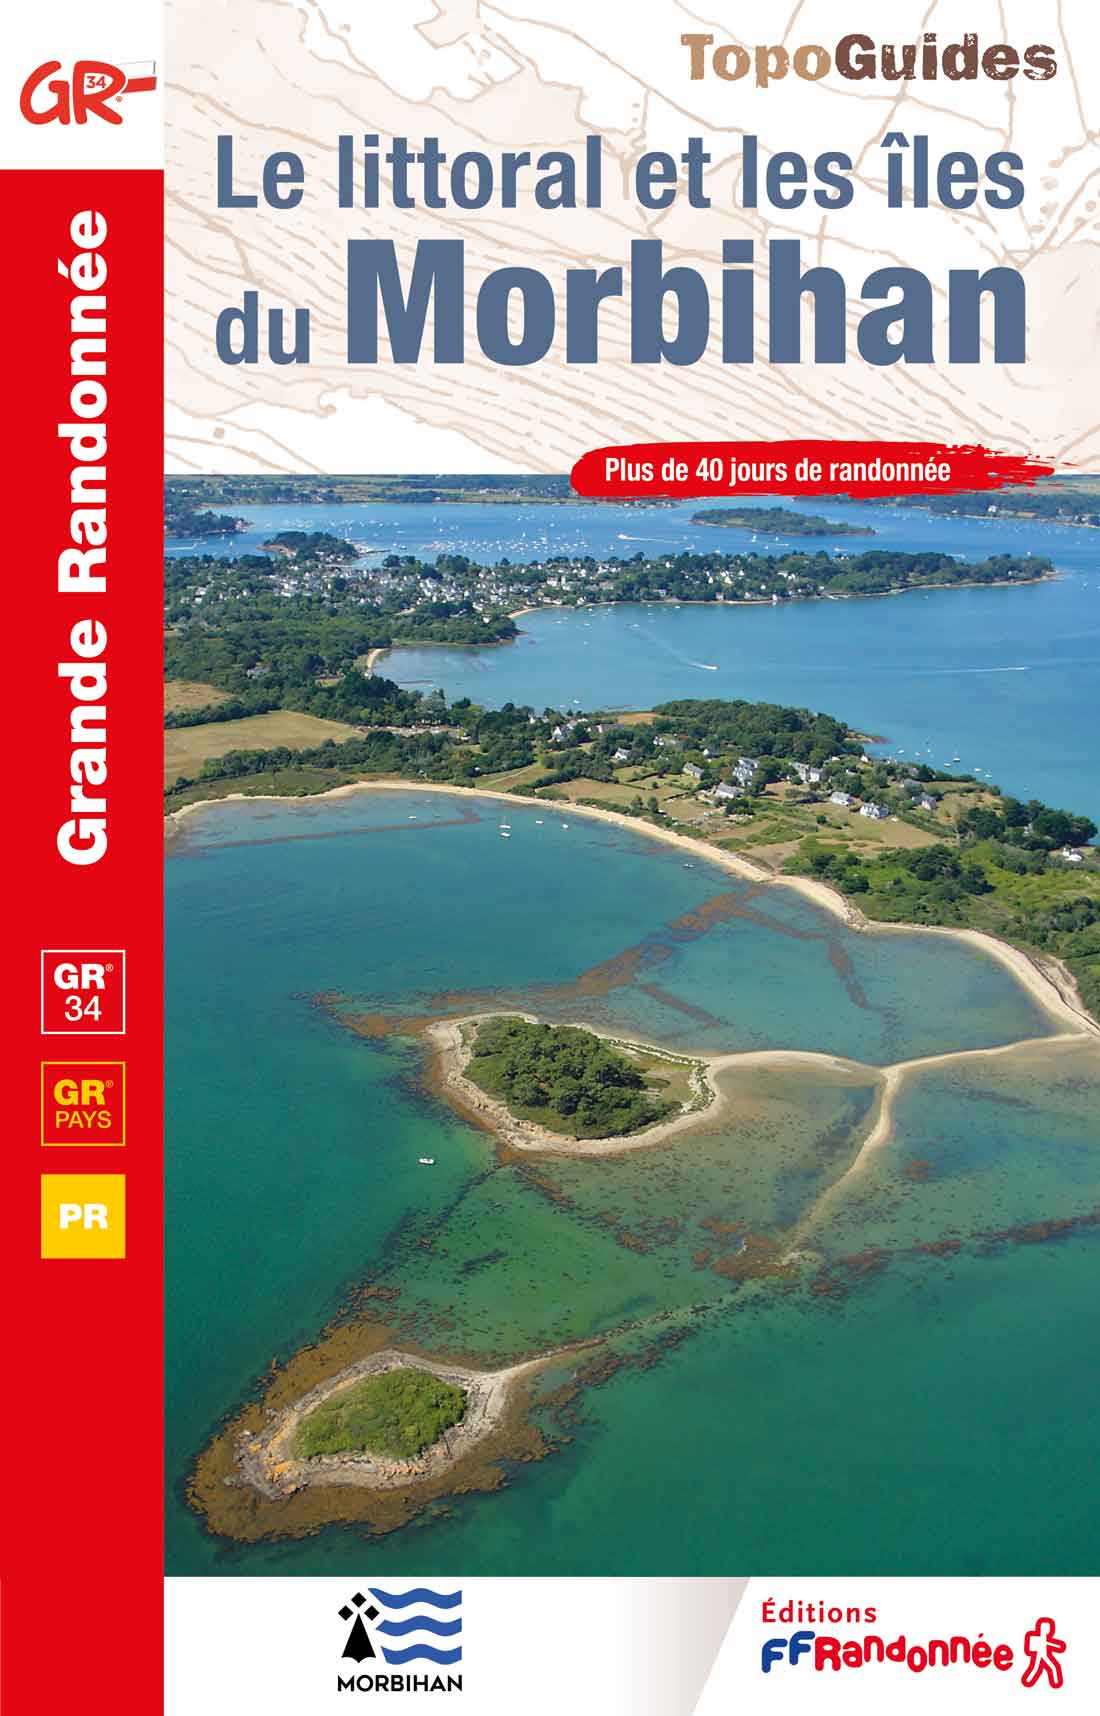 Topoguide FFRandonnée - GR®340 - GR de Pays le tour de Belle-Île-en-Mer 